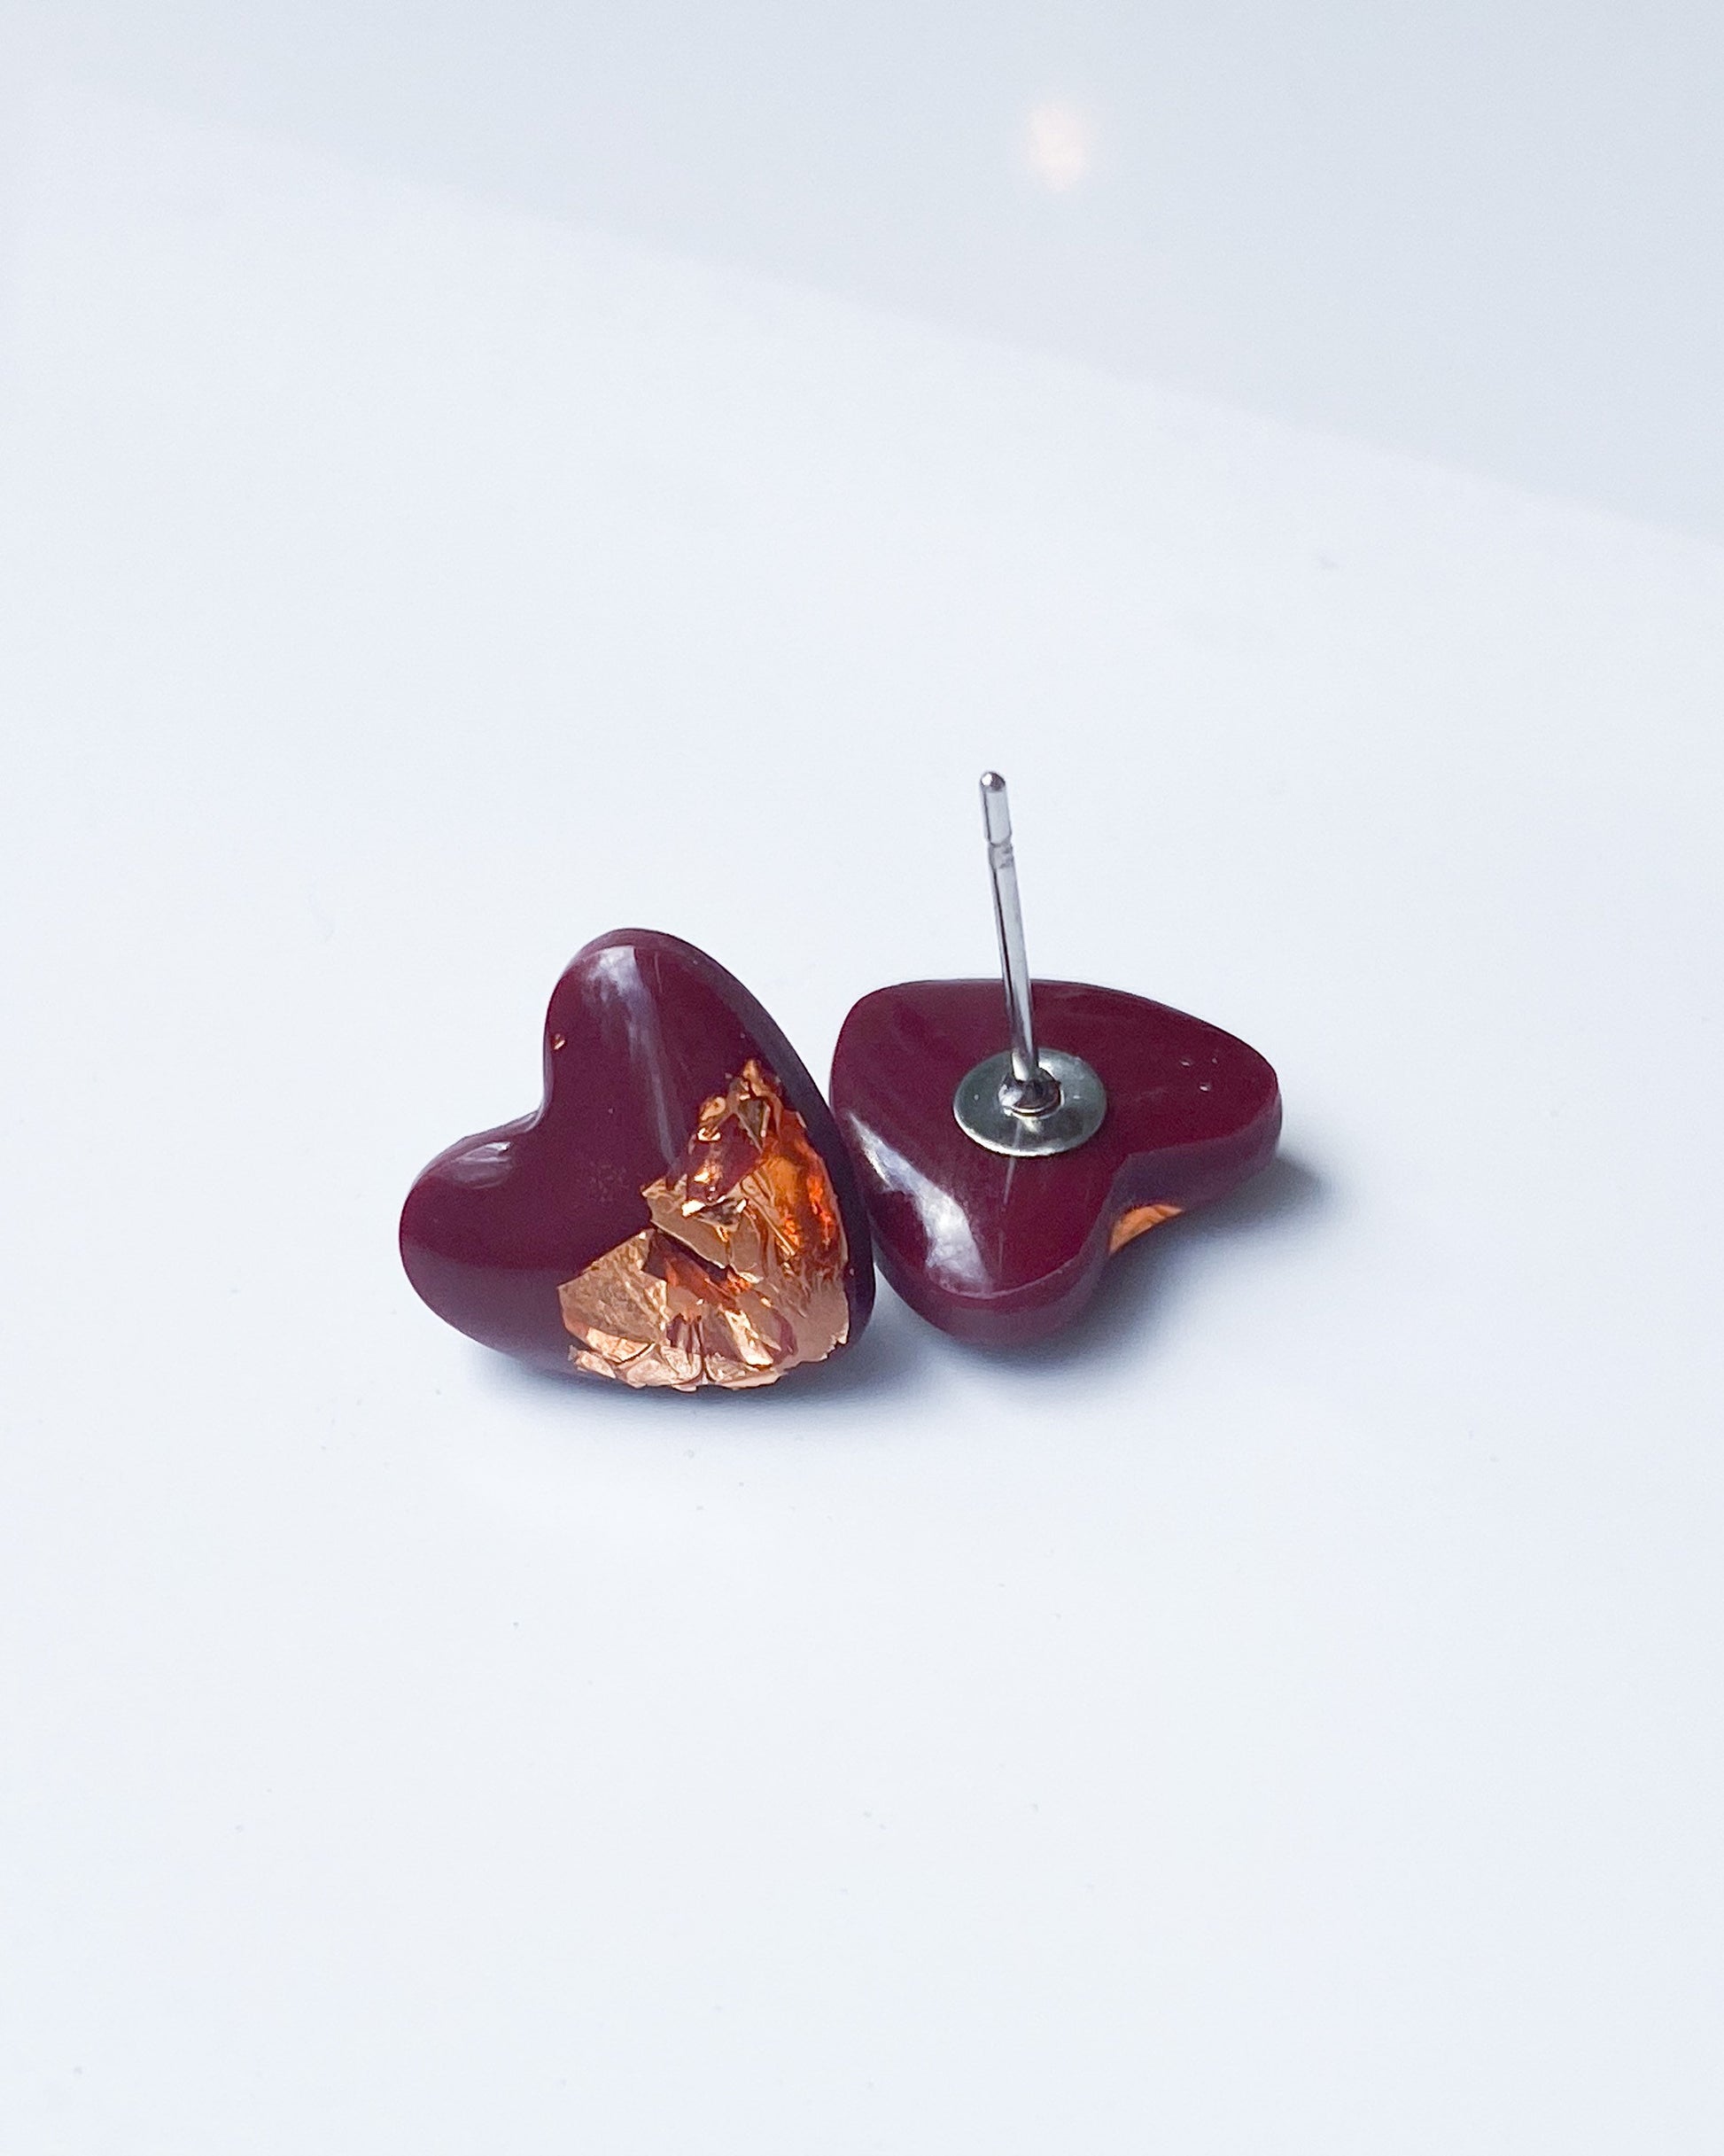 Burgundy stud earrings freeshipping - Ollijewelry